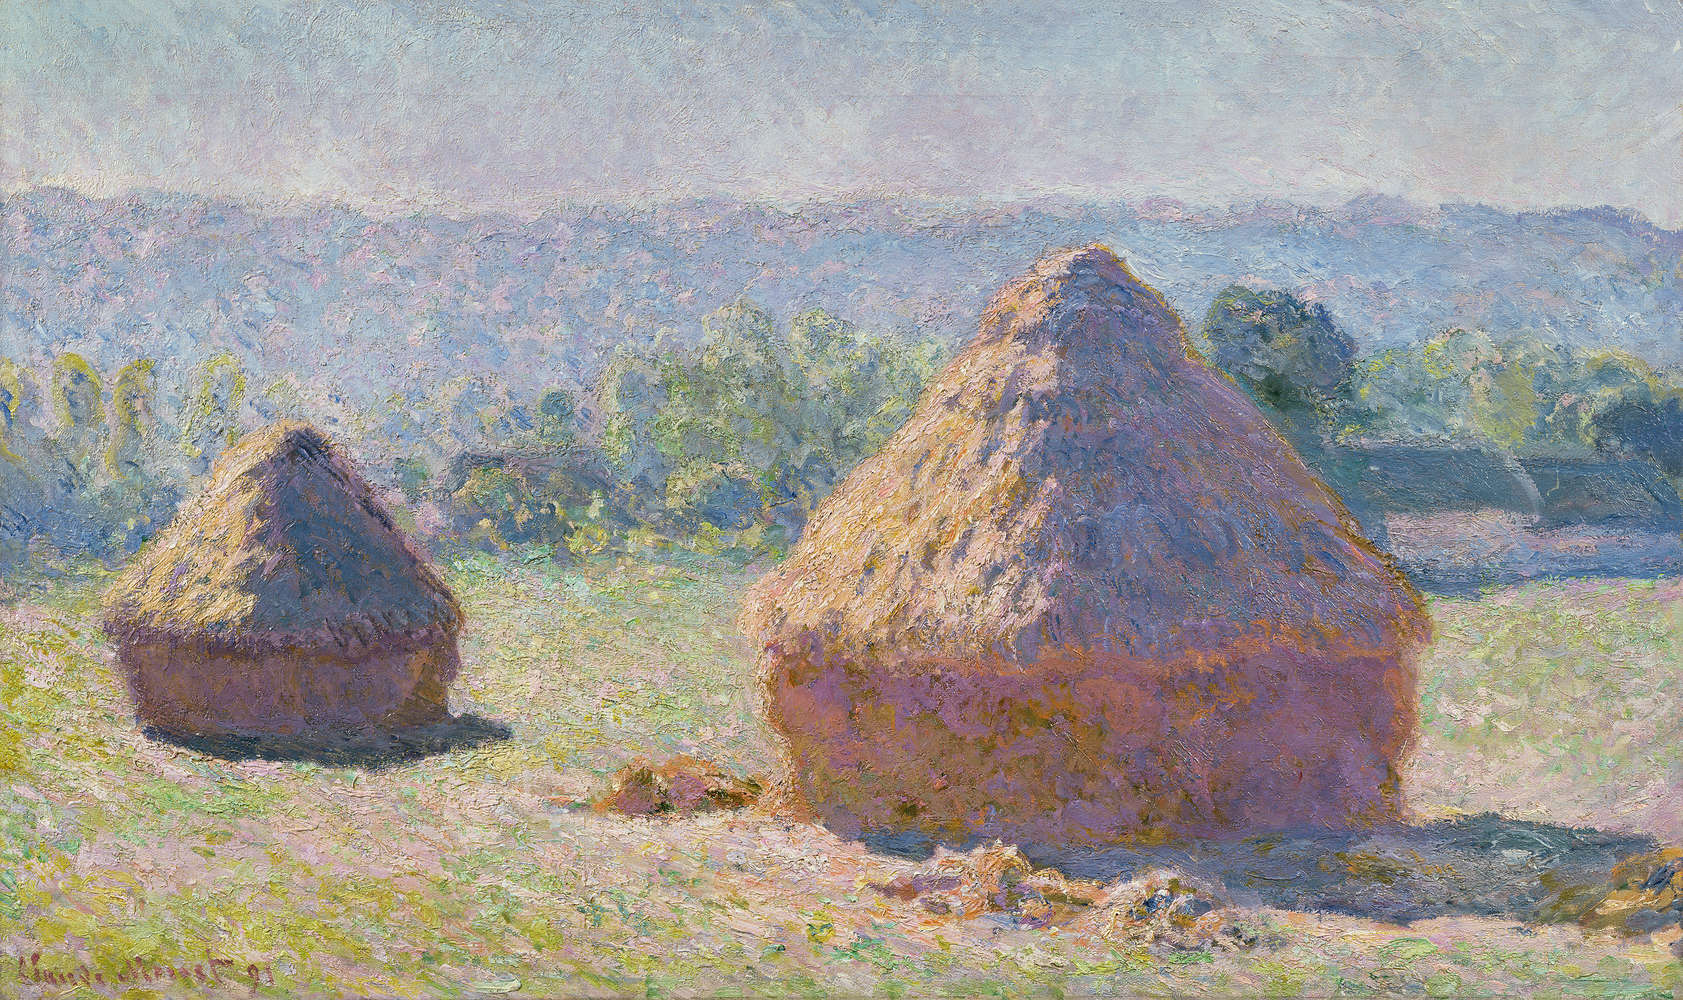             Papier peint "Grange de paille à la fin de l'été" de Claude Monet
        